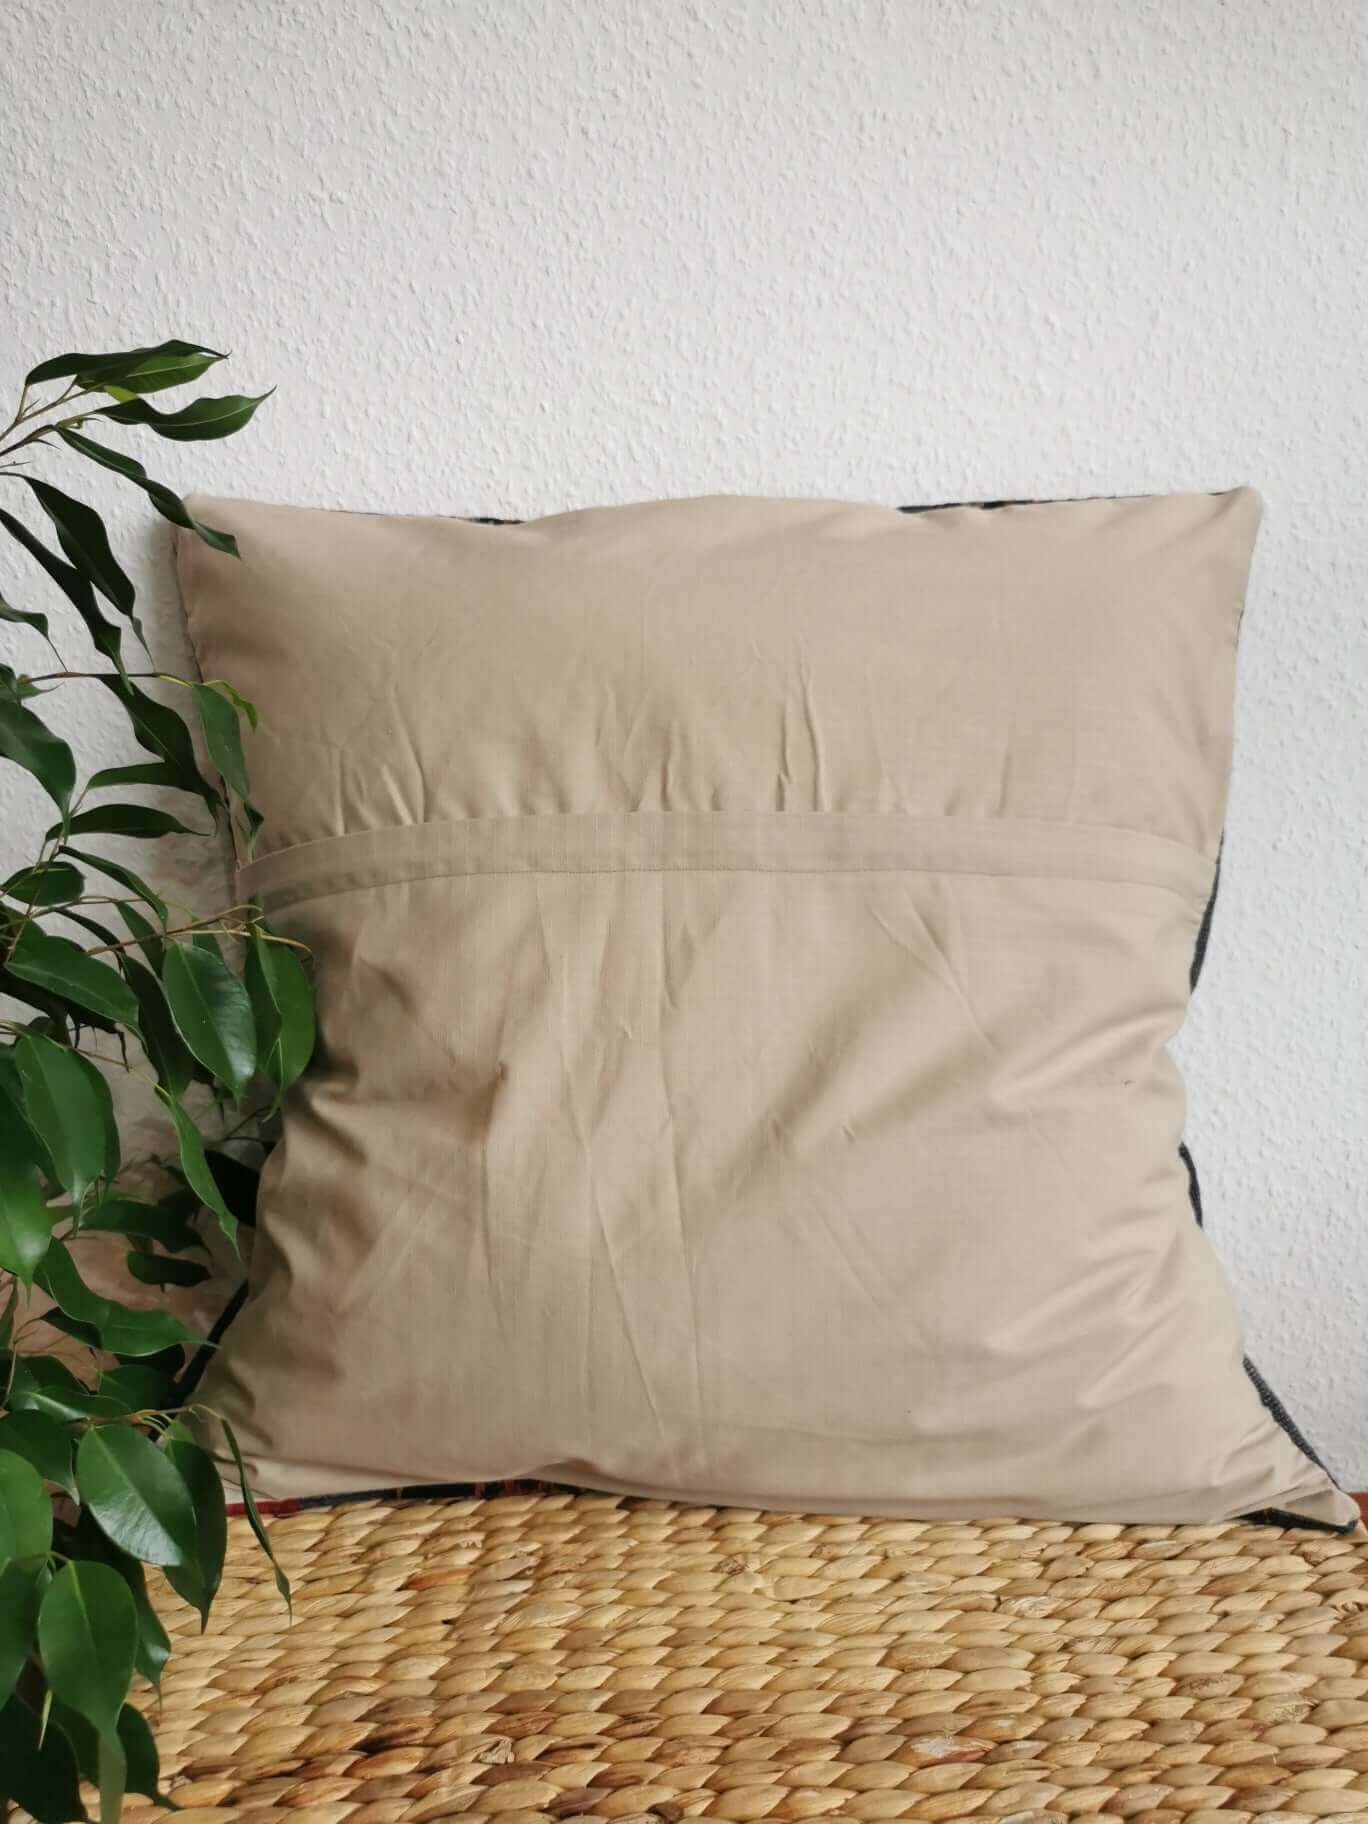 Kilim Pillow Cover, Turkey, old, unique, vintage, Kelim, Kelimkissen, Kissenhuelle, pillow case, boho, eclectic, arabic design